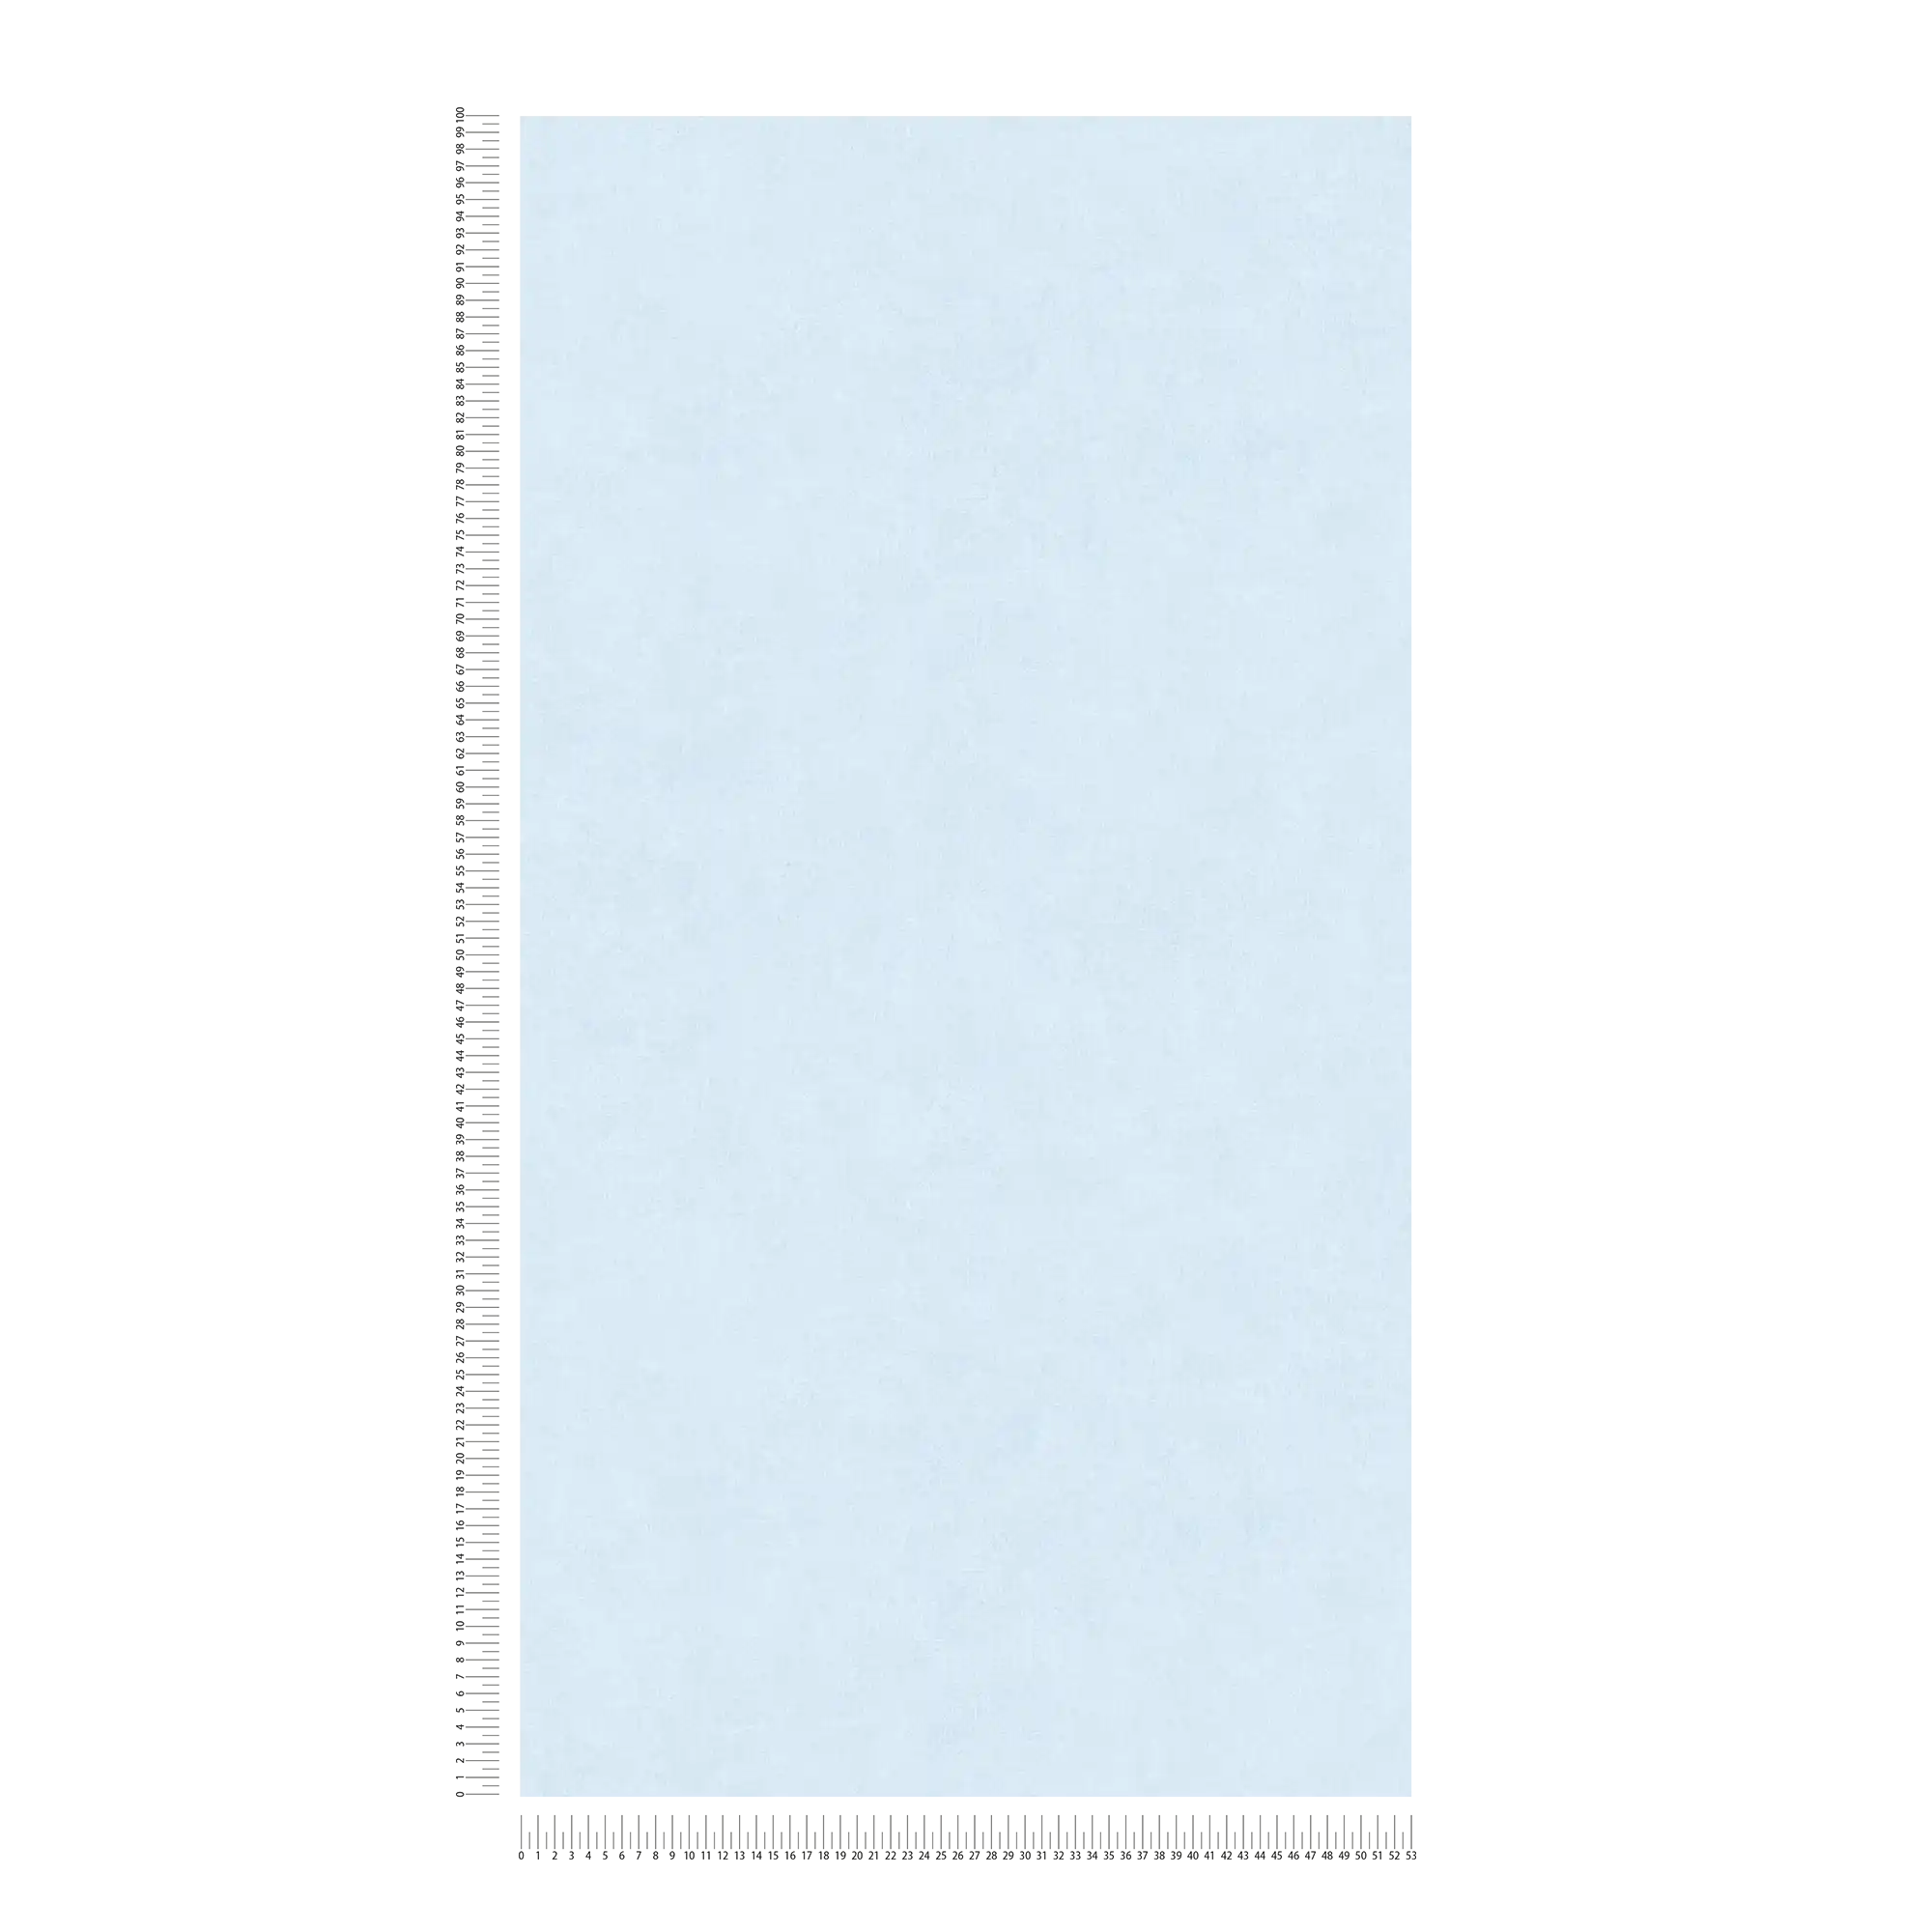             Papel pintado unitario con un sutil patrón de colores en look usado - blanco, azul
        